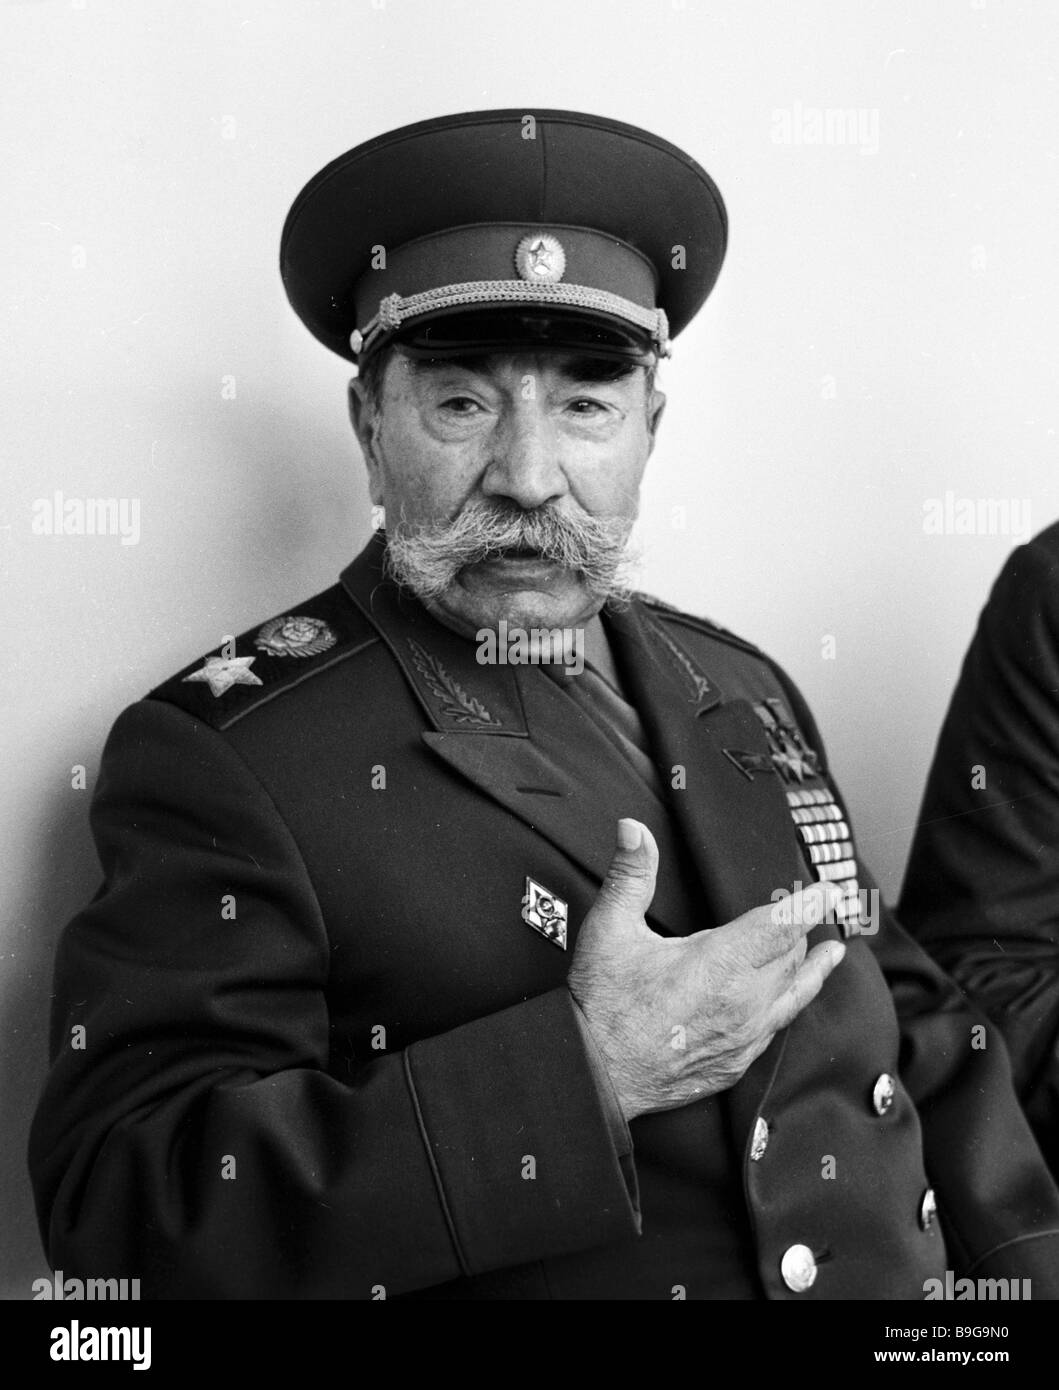 Marschall der Sowjetunion Semjon Budyonny Stockfotografie - Alamy